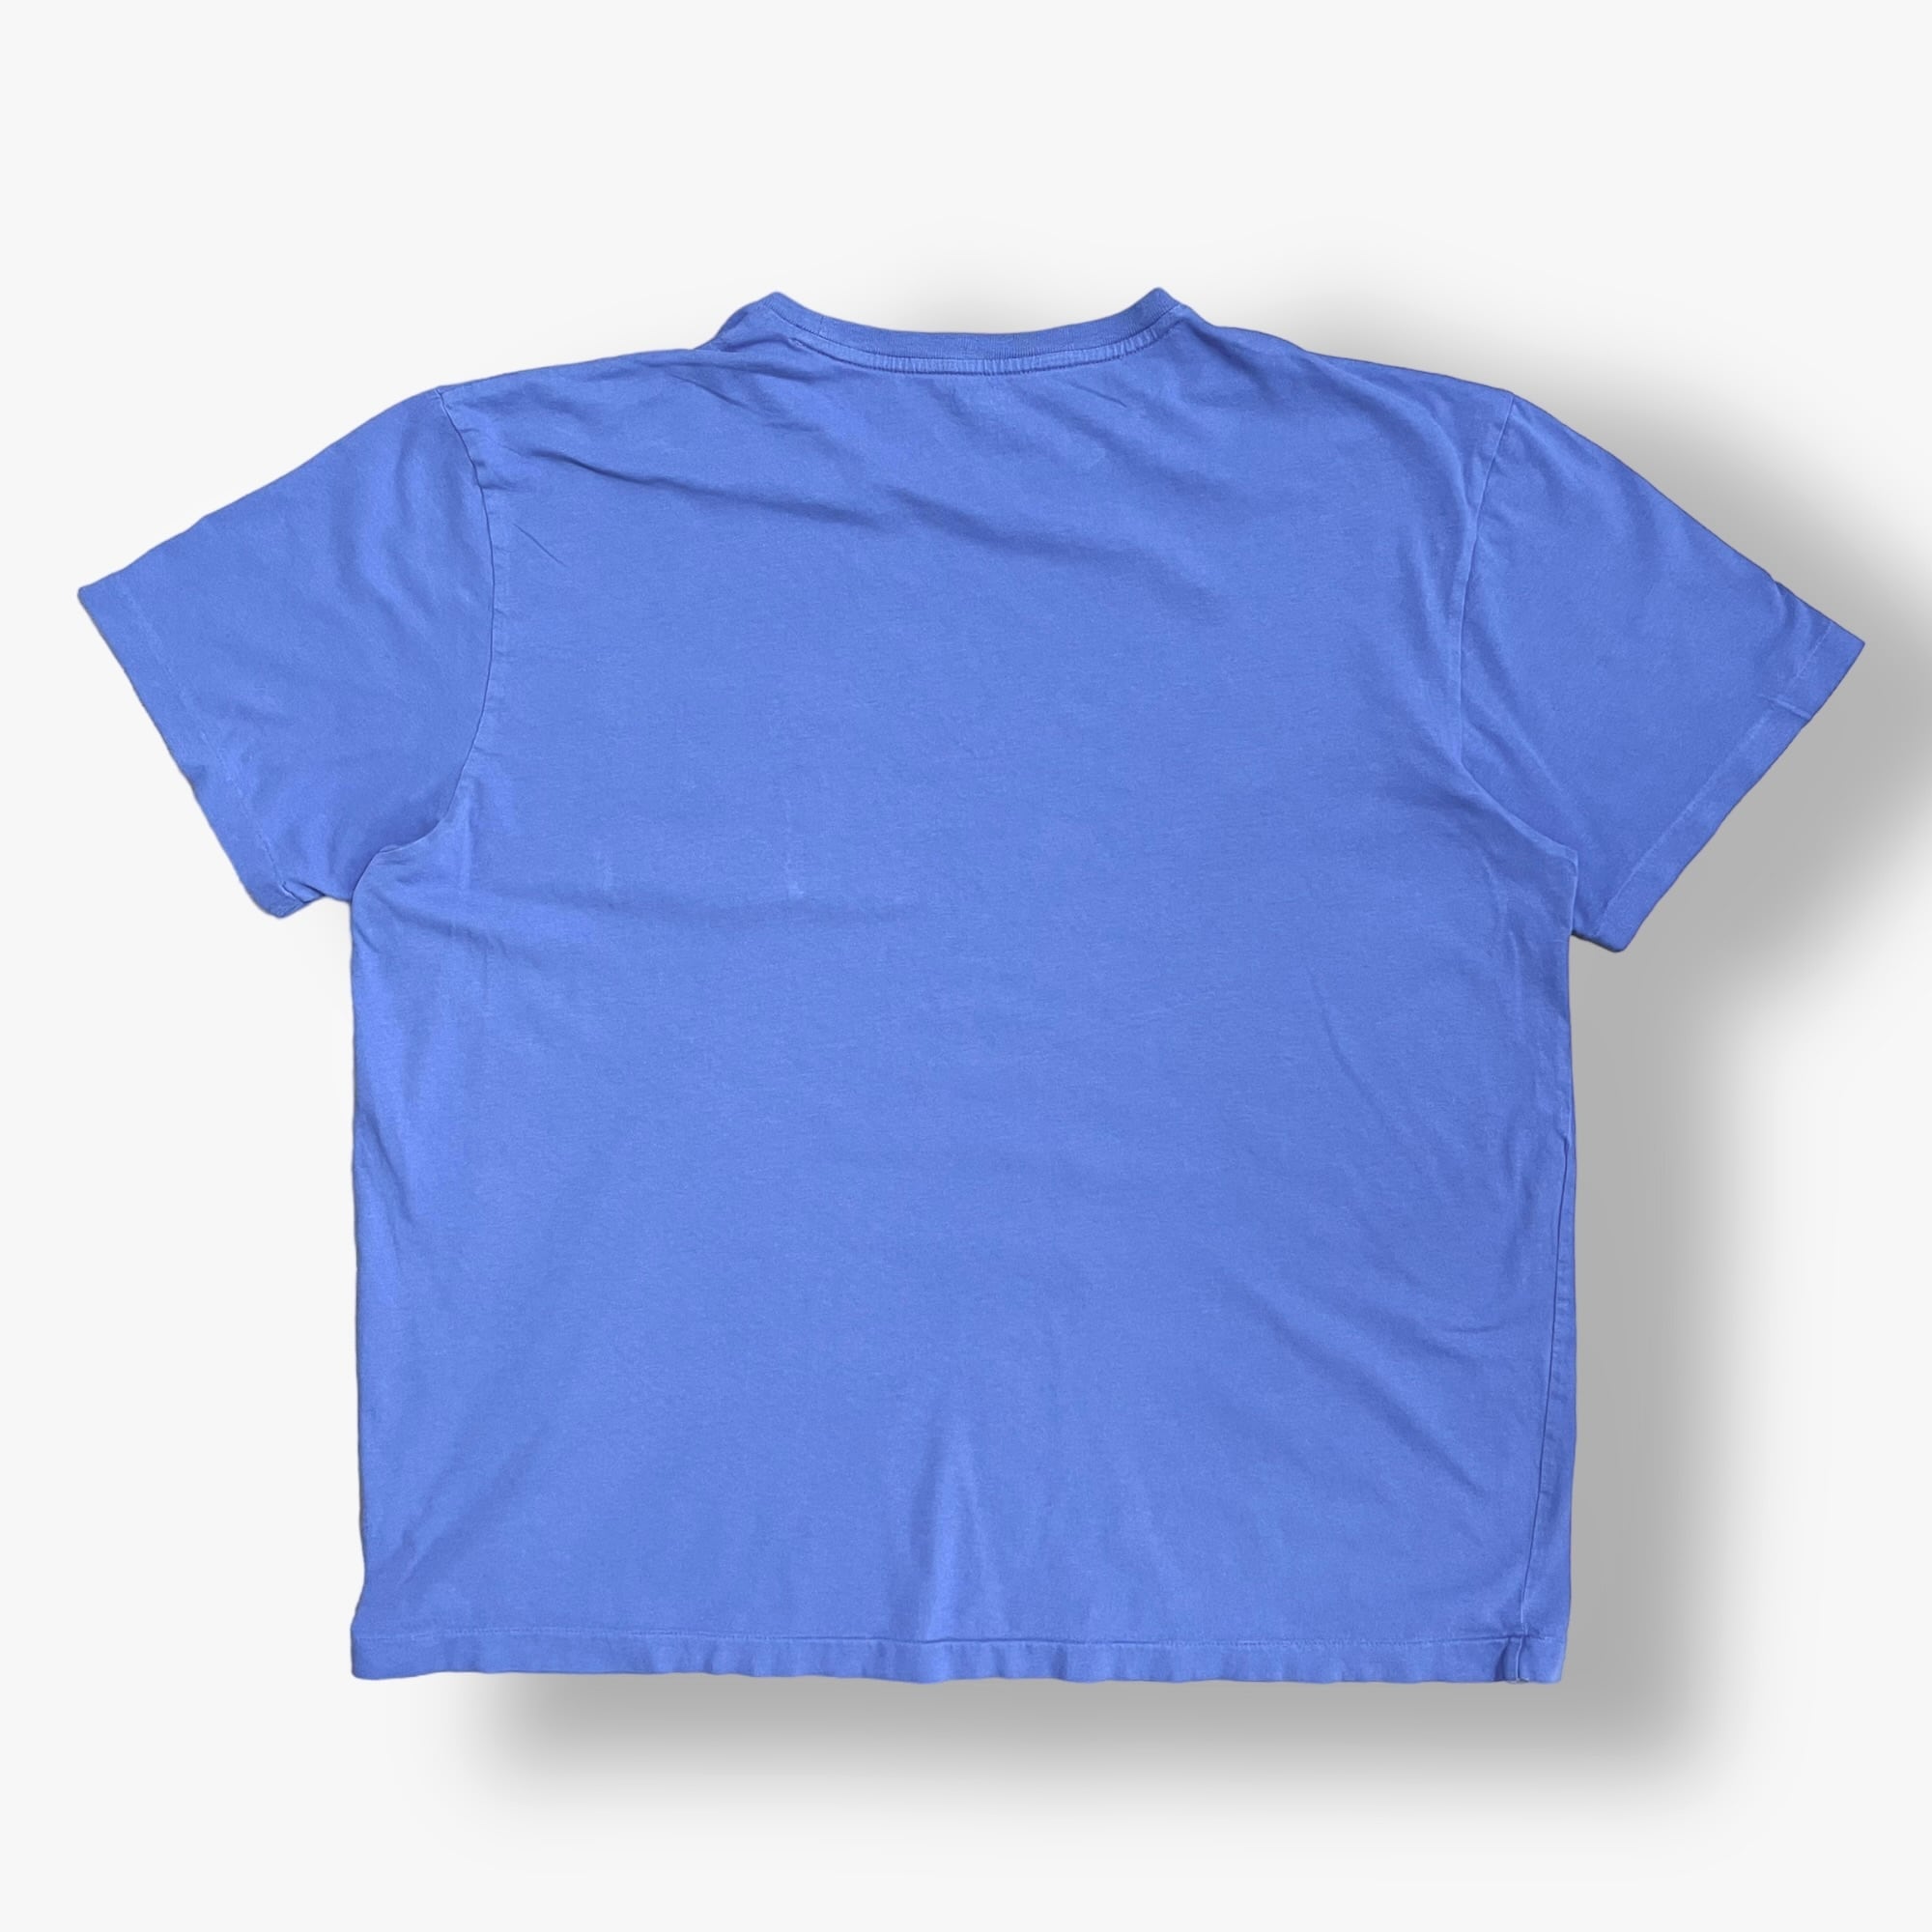 POLO RALPH LAUREN】XL ビッグシルエット ポケットTシャツ 刺繍ロゴ